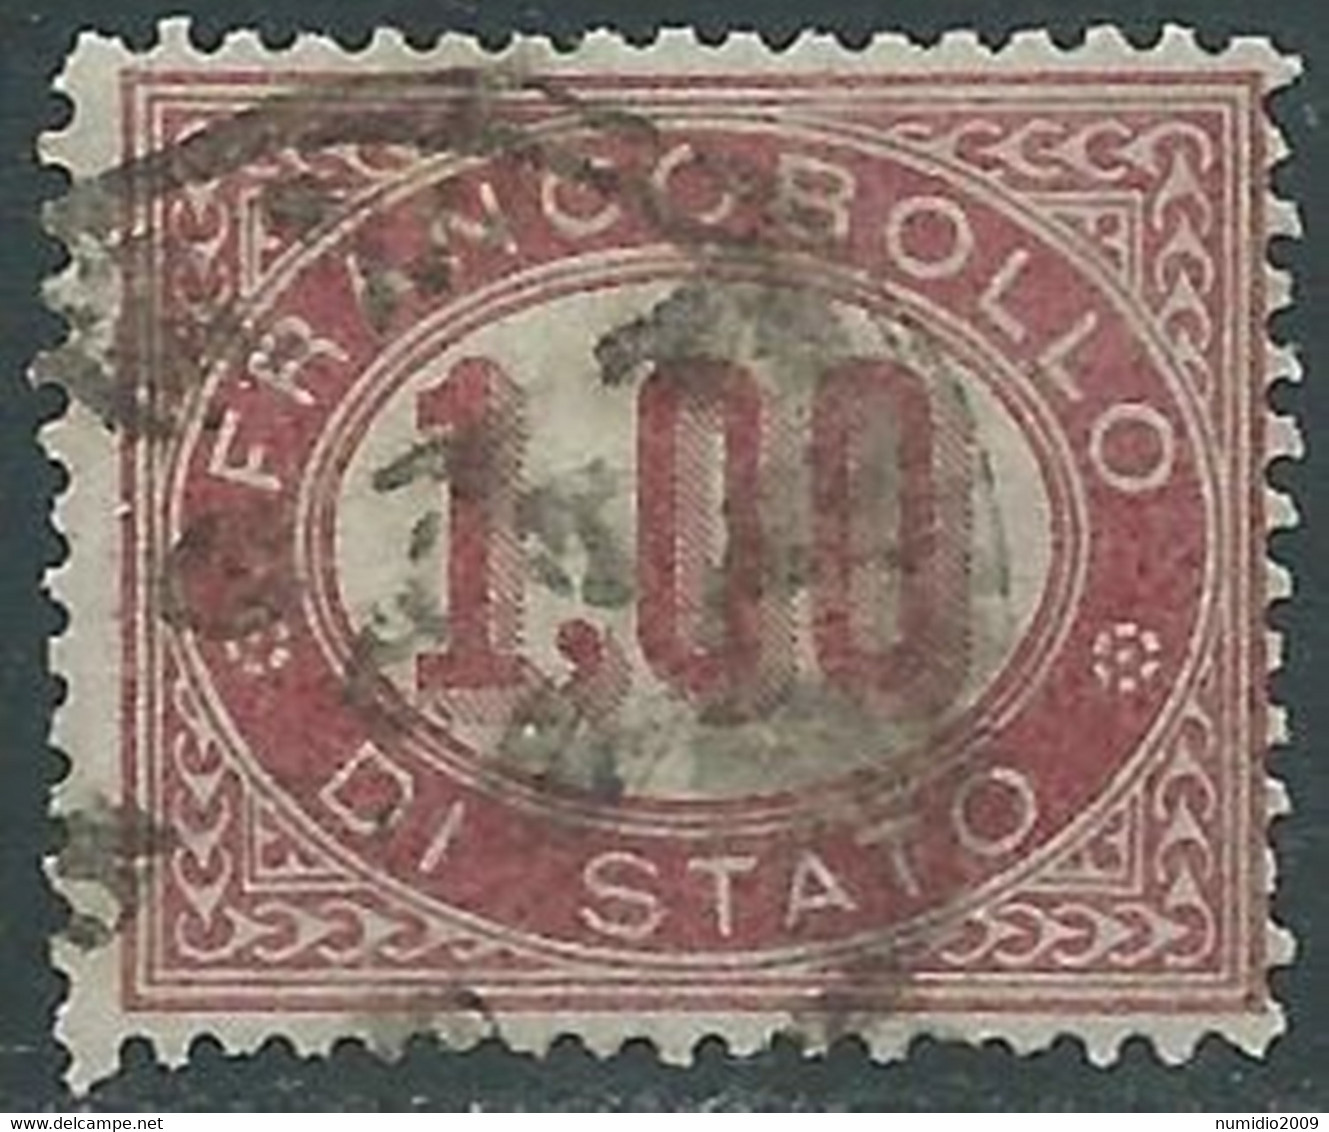 1875 REGNO SERVIZIO DI STATO USATO 1 LIRA - RE30-7 - Service